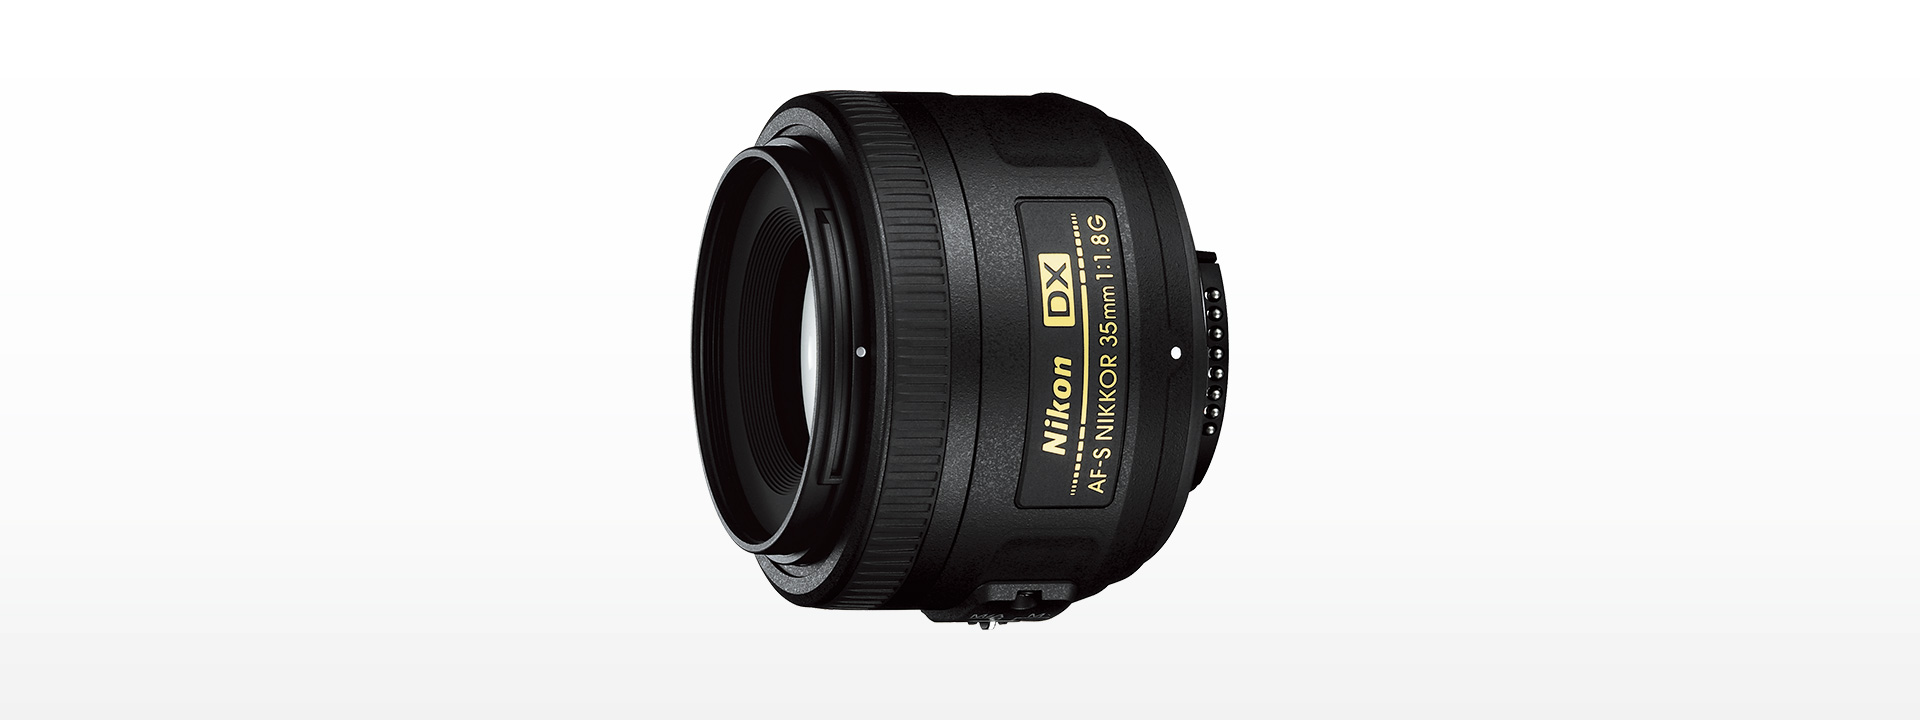 カメラ レンズ(単焦点) AF-S DX NIKKOR 35mm f/1.8G - 概要 | NIKKORレンズ | ニコンイメージング